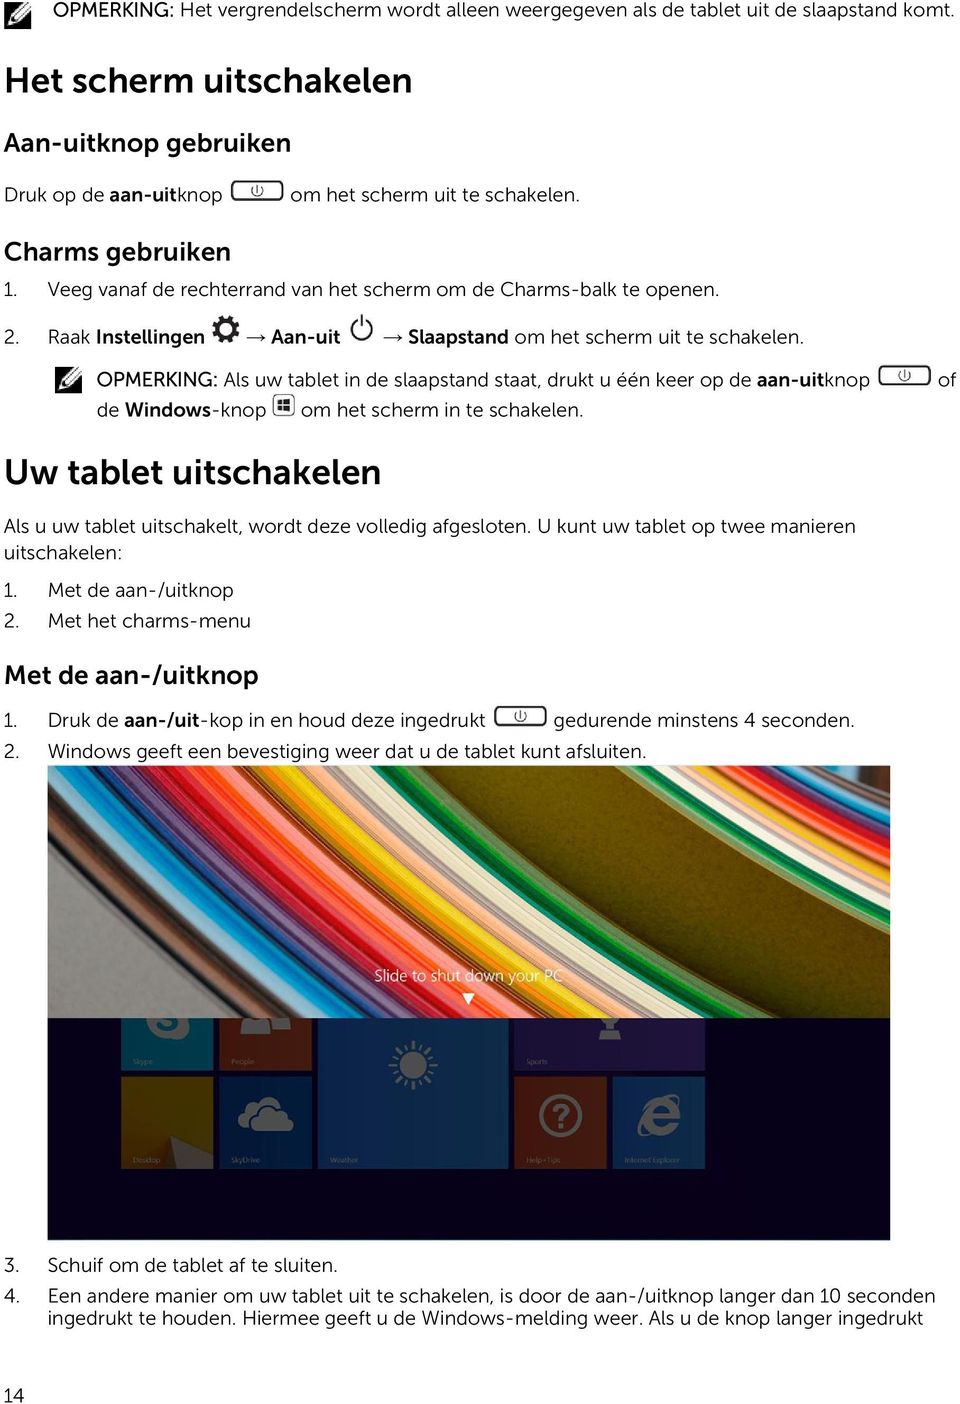 OPMERKING: Als uw tablet in de slaapstand staat, drukt u één keer op de aan-uitknop de Windows-knop om het scherm in te schakelen.